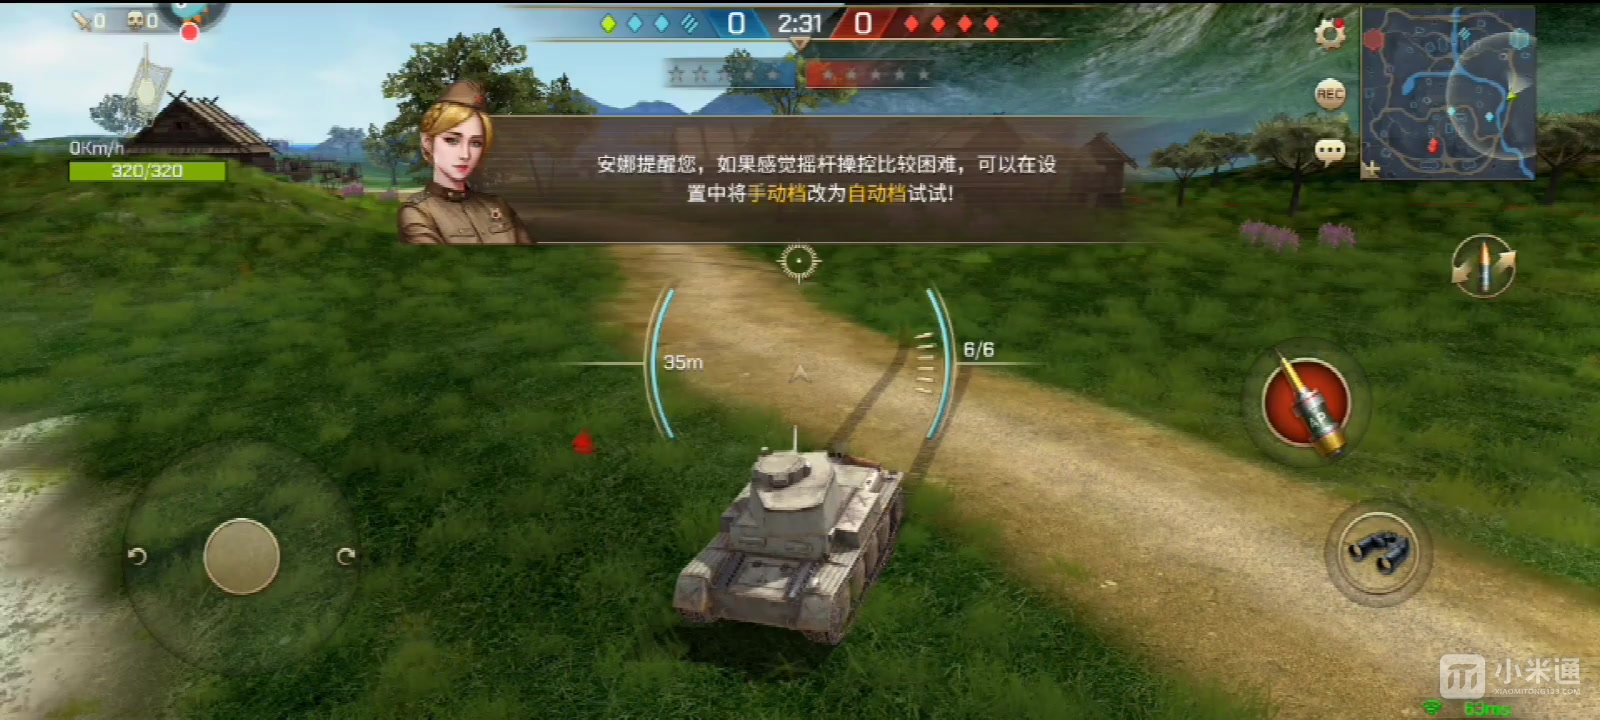 坦克争锋